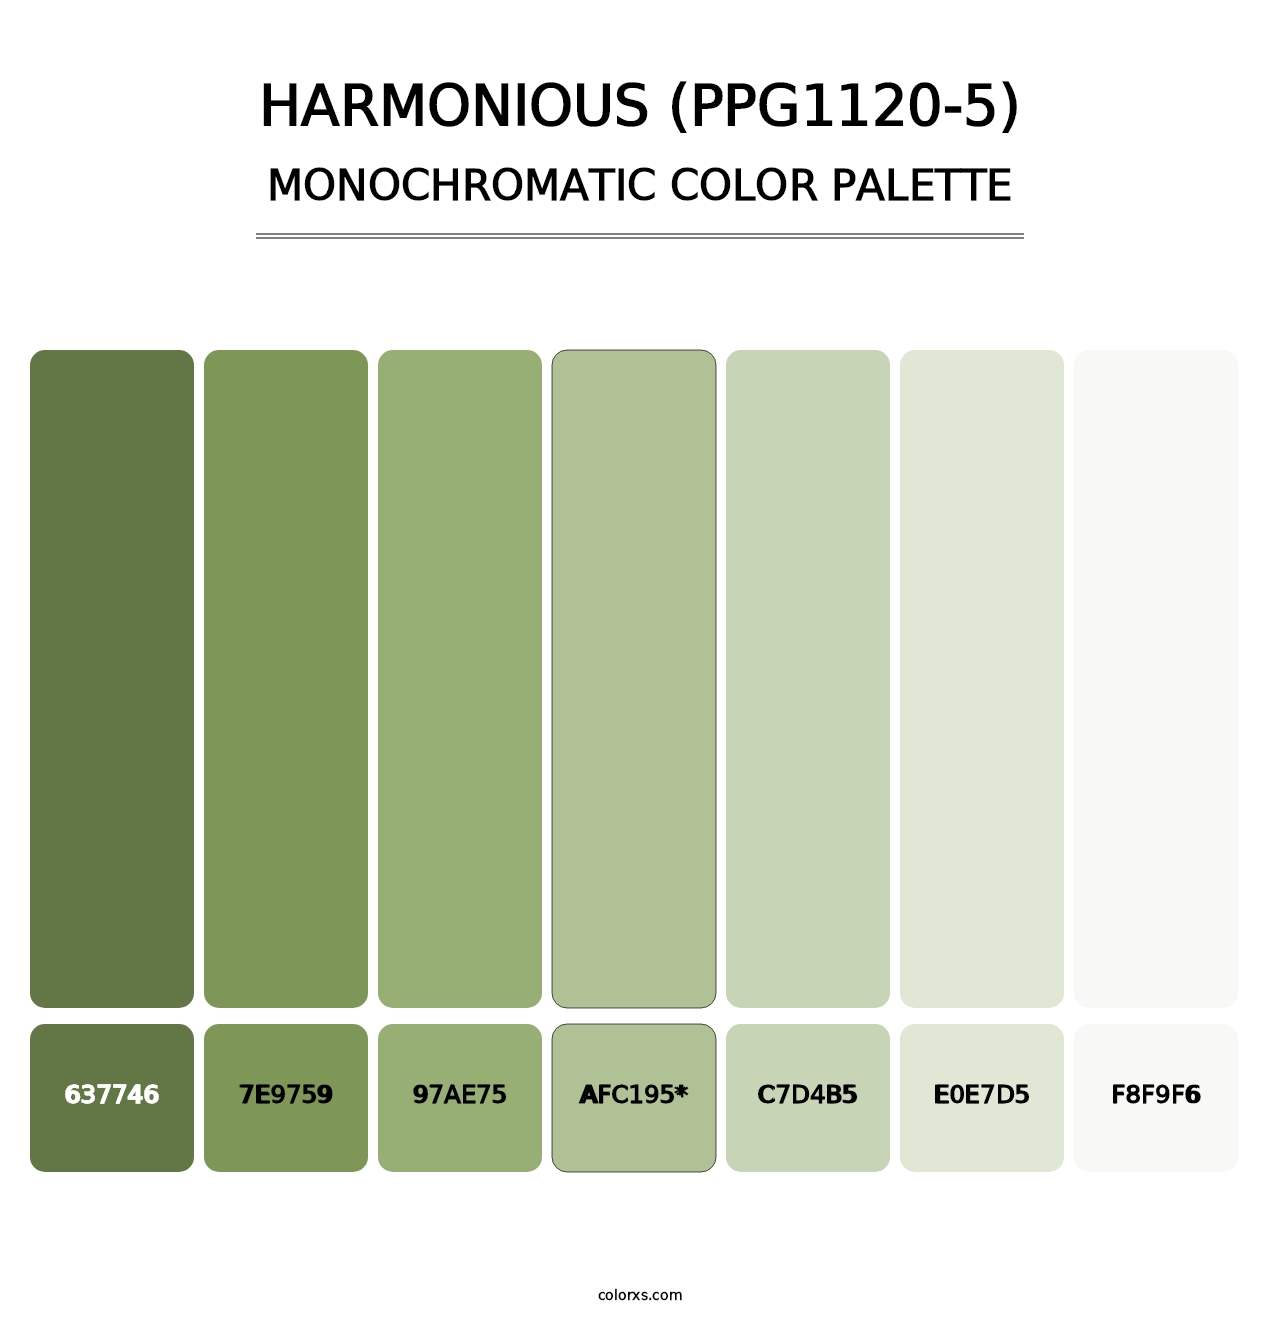 Harmonious (PPG1120-5) - Monochromatic Color Palette